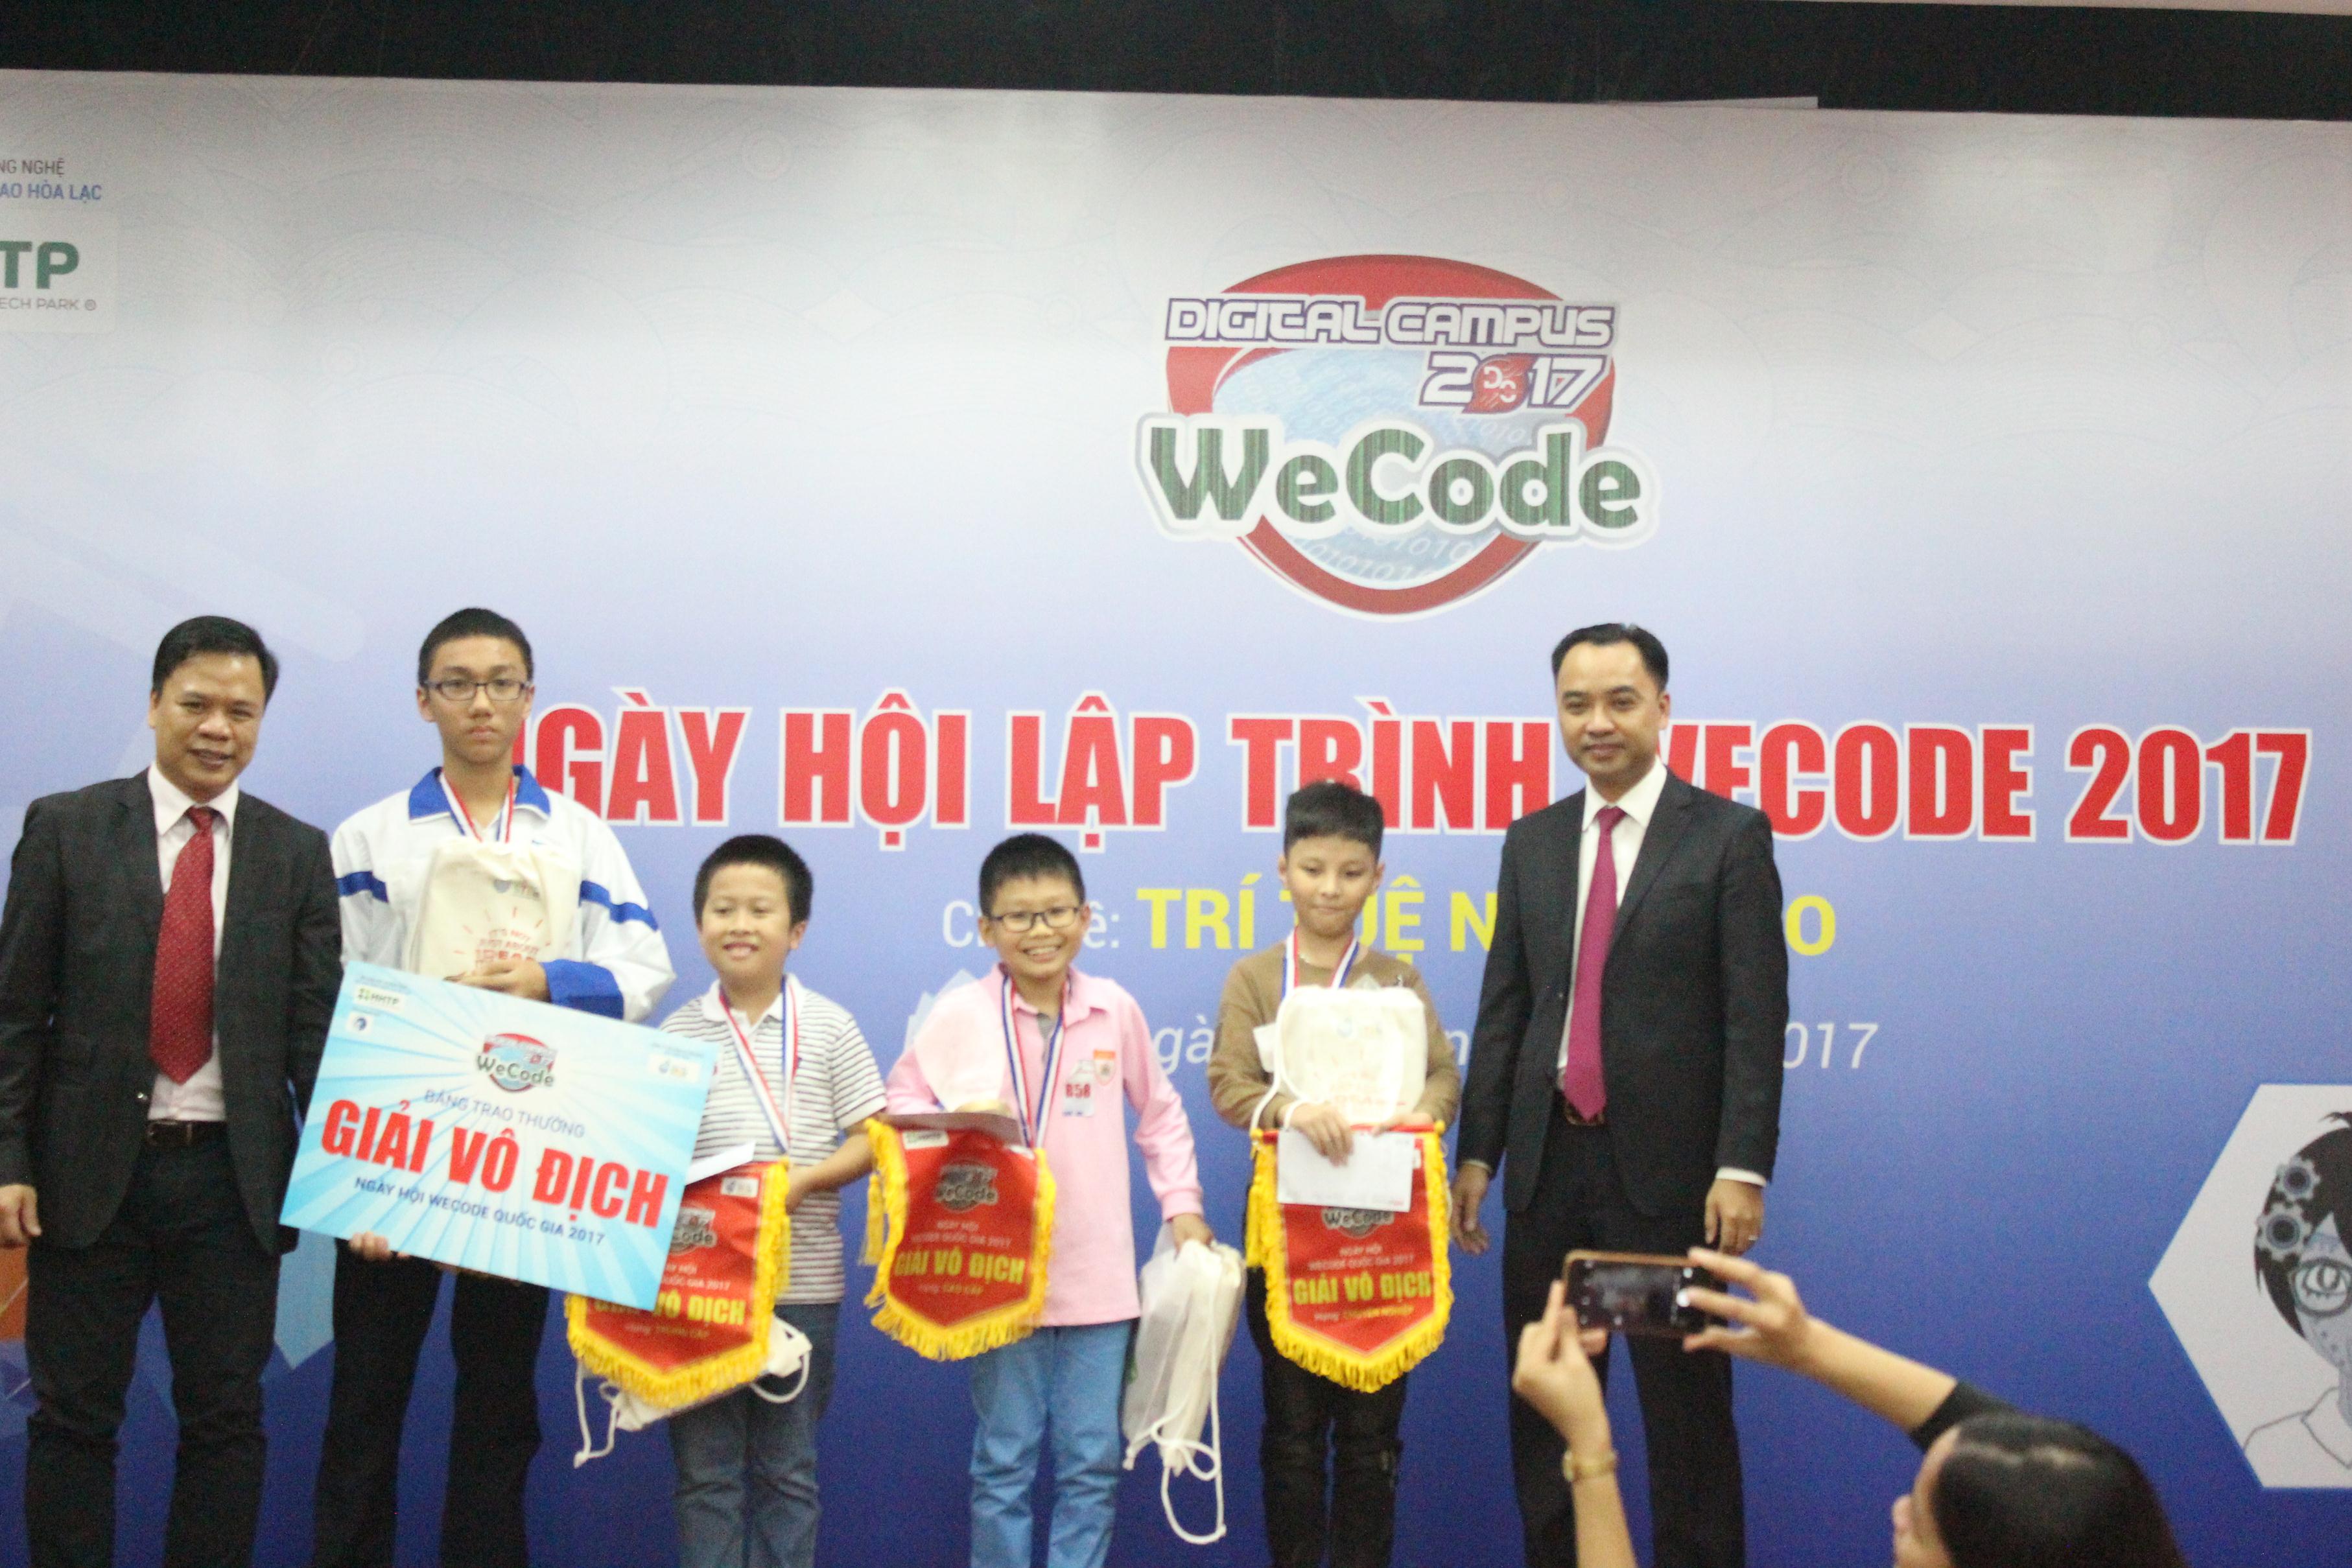 Ông Nguyễn Thế Trung và ông Nguyễn Văn Cường- Phó trưởng ban Công nghệ cao Hòa lạc, Bộ Khoa học và Công nghệ- trao giải thưởng cho các nhà vô địch